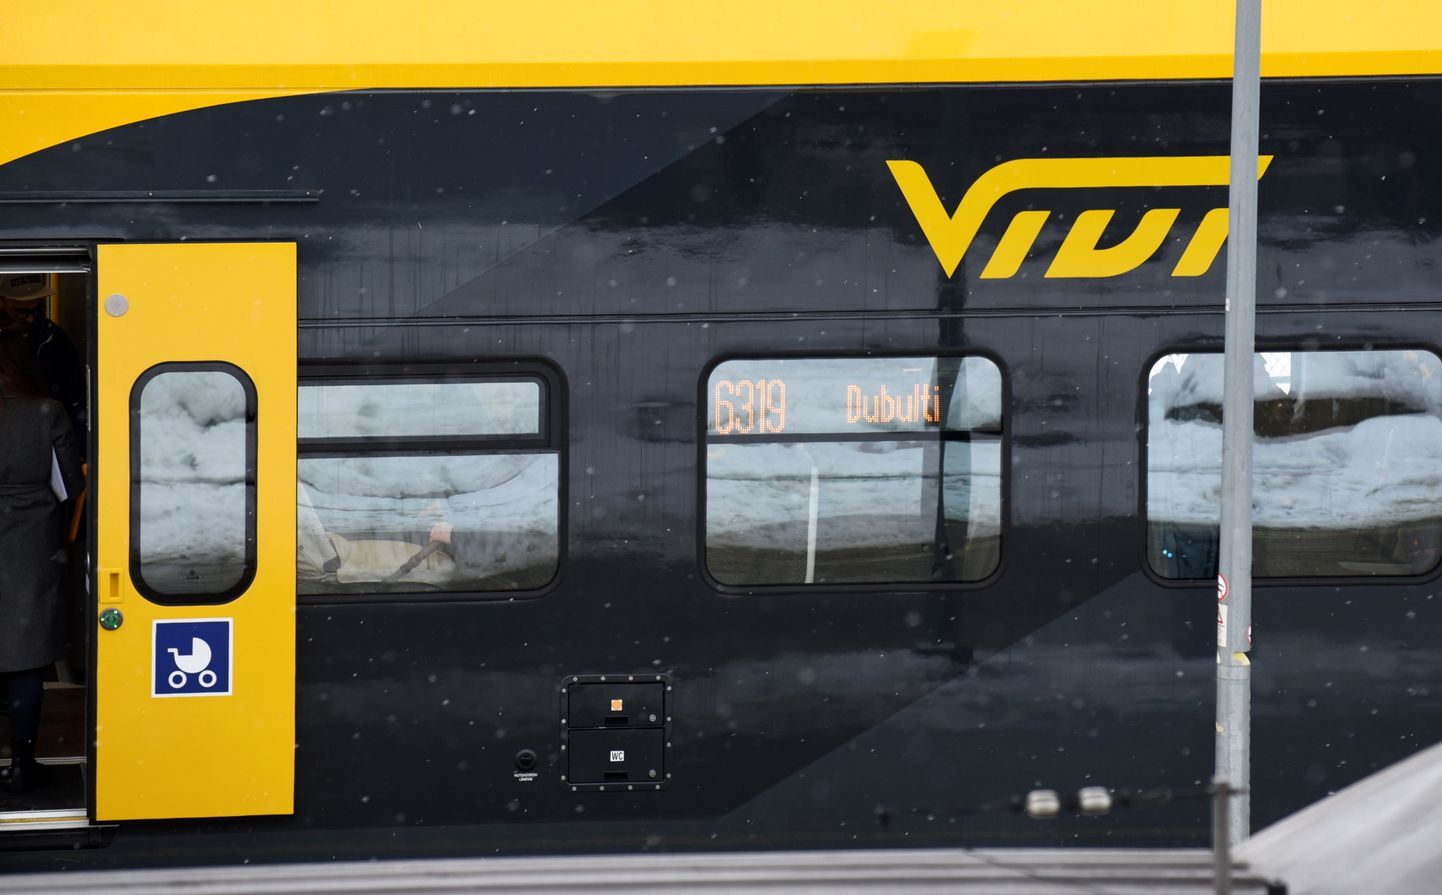 Pirmais jaunā "Pasažieru vilciens" elektrovilciena "Vivi" reiss no Rīgas Centrālās dzelzceļa stacijas uz "Dubultiem" Jūrmalā.